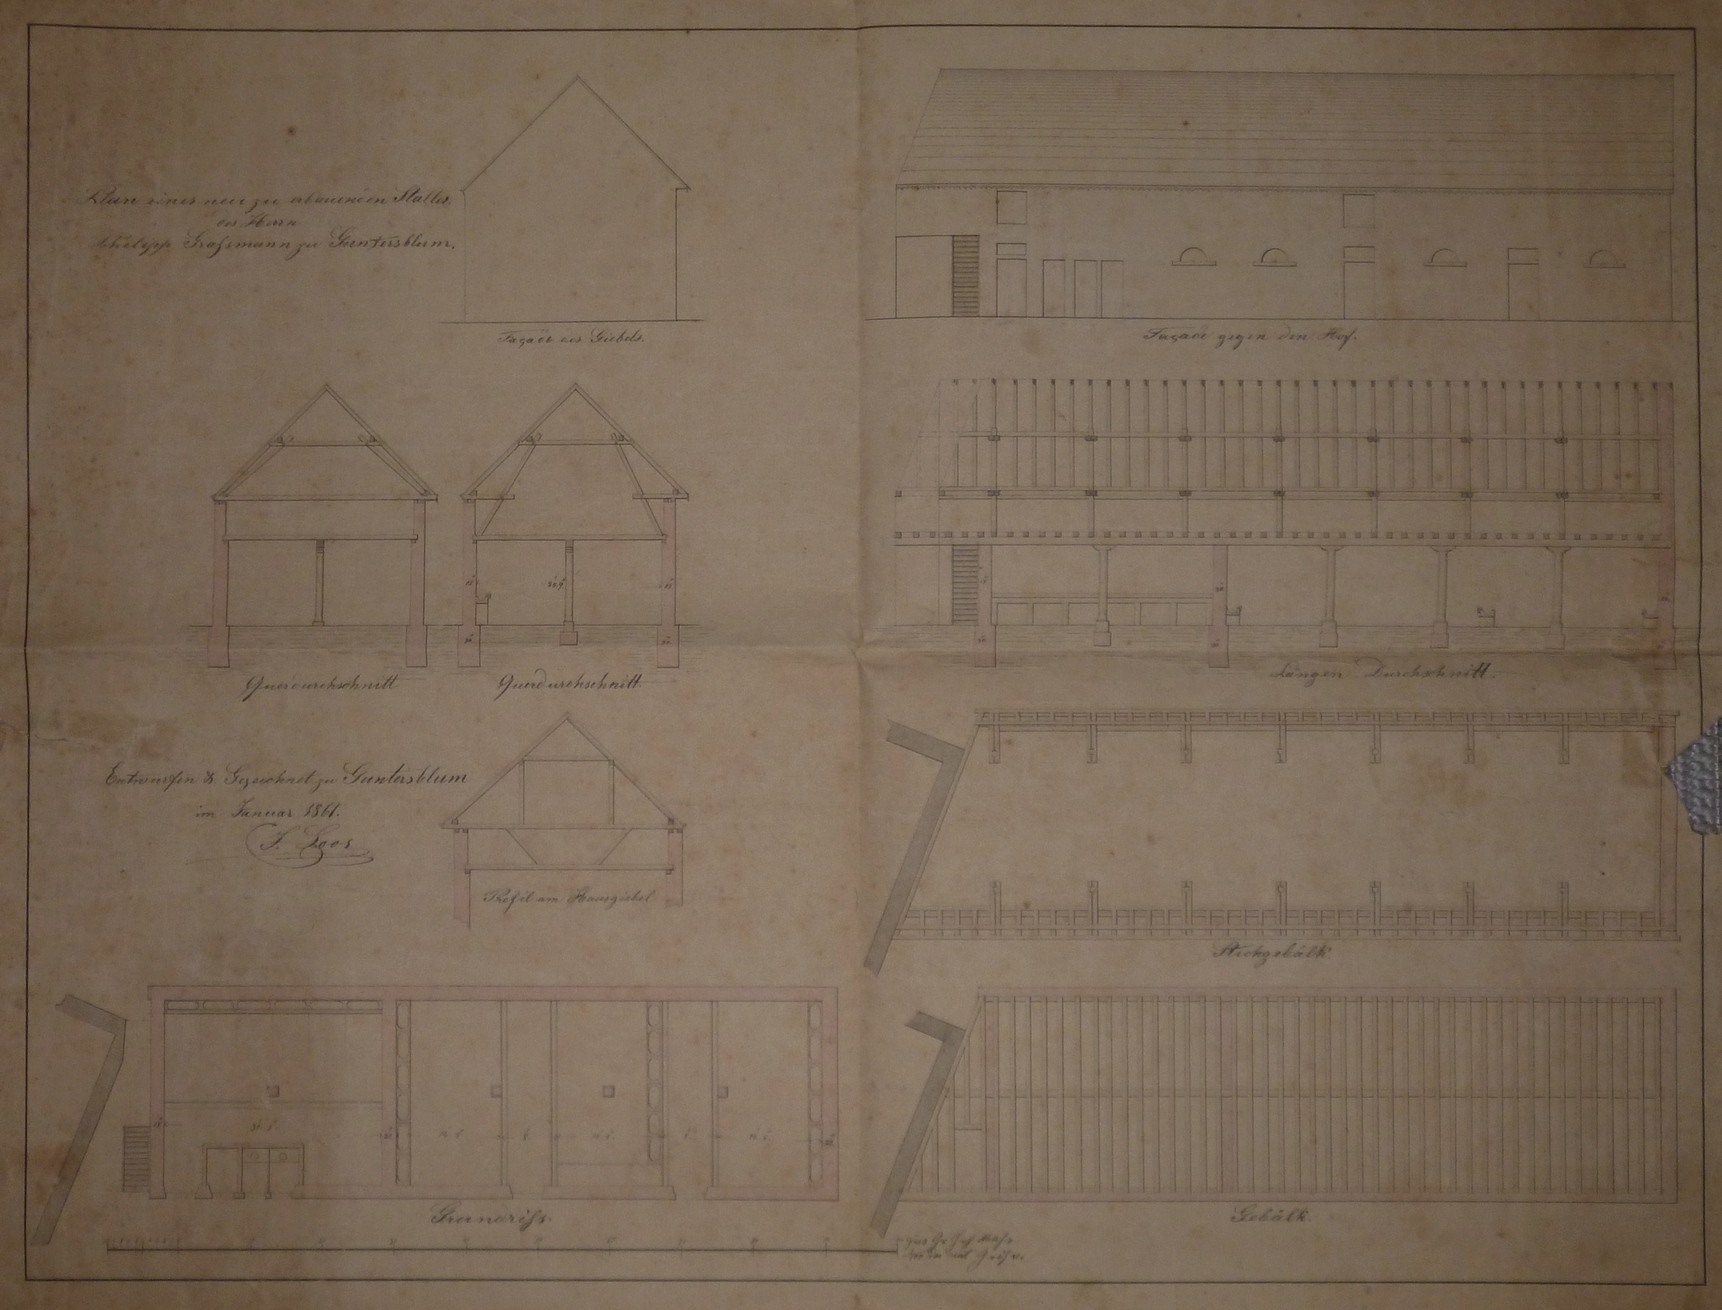 Bauplan Scheuer Graßmann 1859 (Kulturverein Guntersblum CC BY-NC-SA)